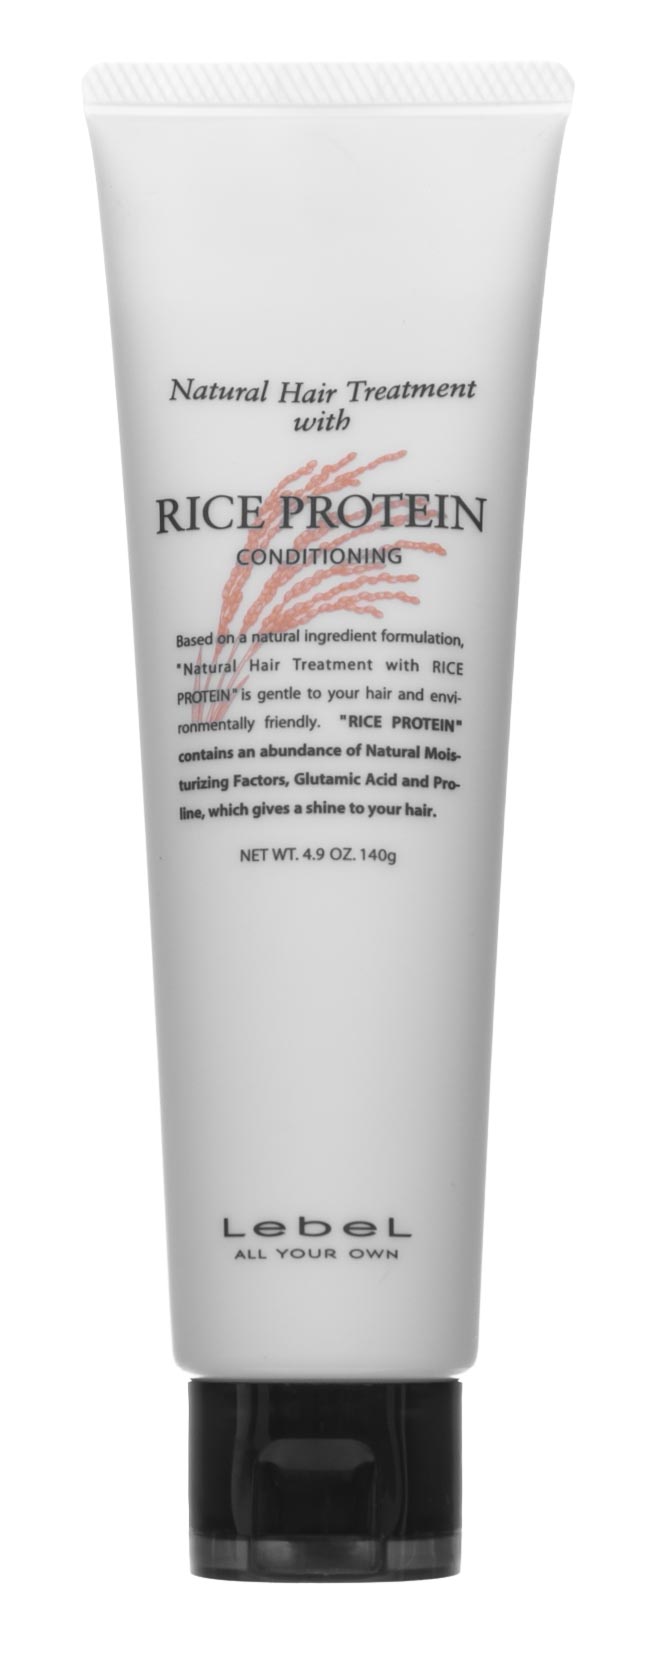 Lebel Восстанавливающая маска для волос Rice Protein, 140 г (Lebel, Натуральная серия)